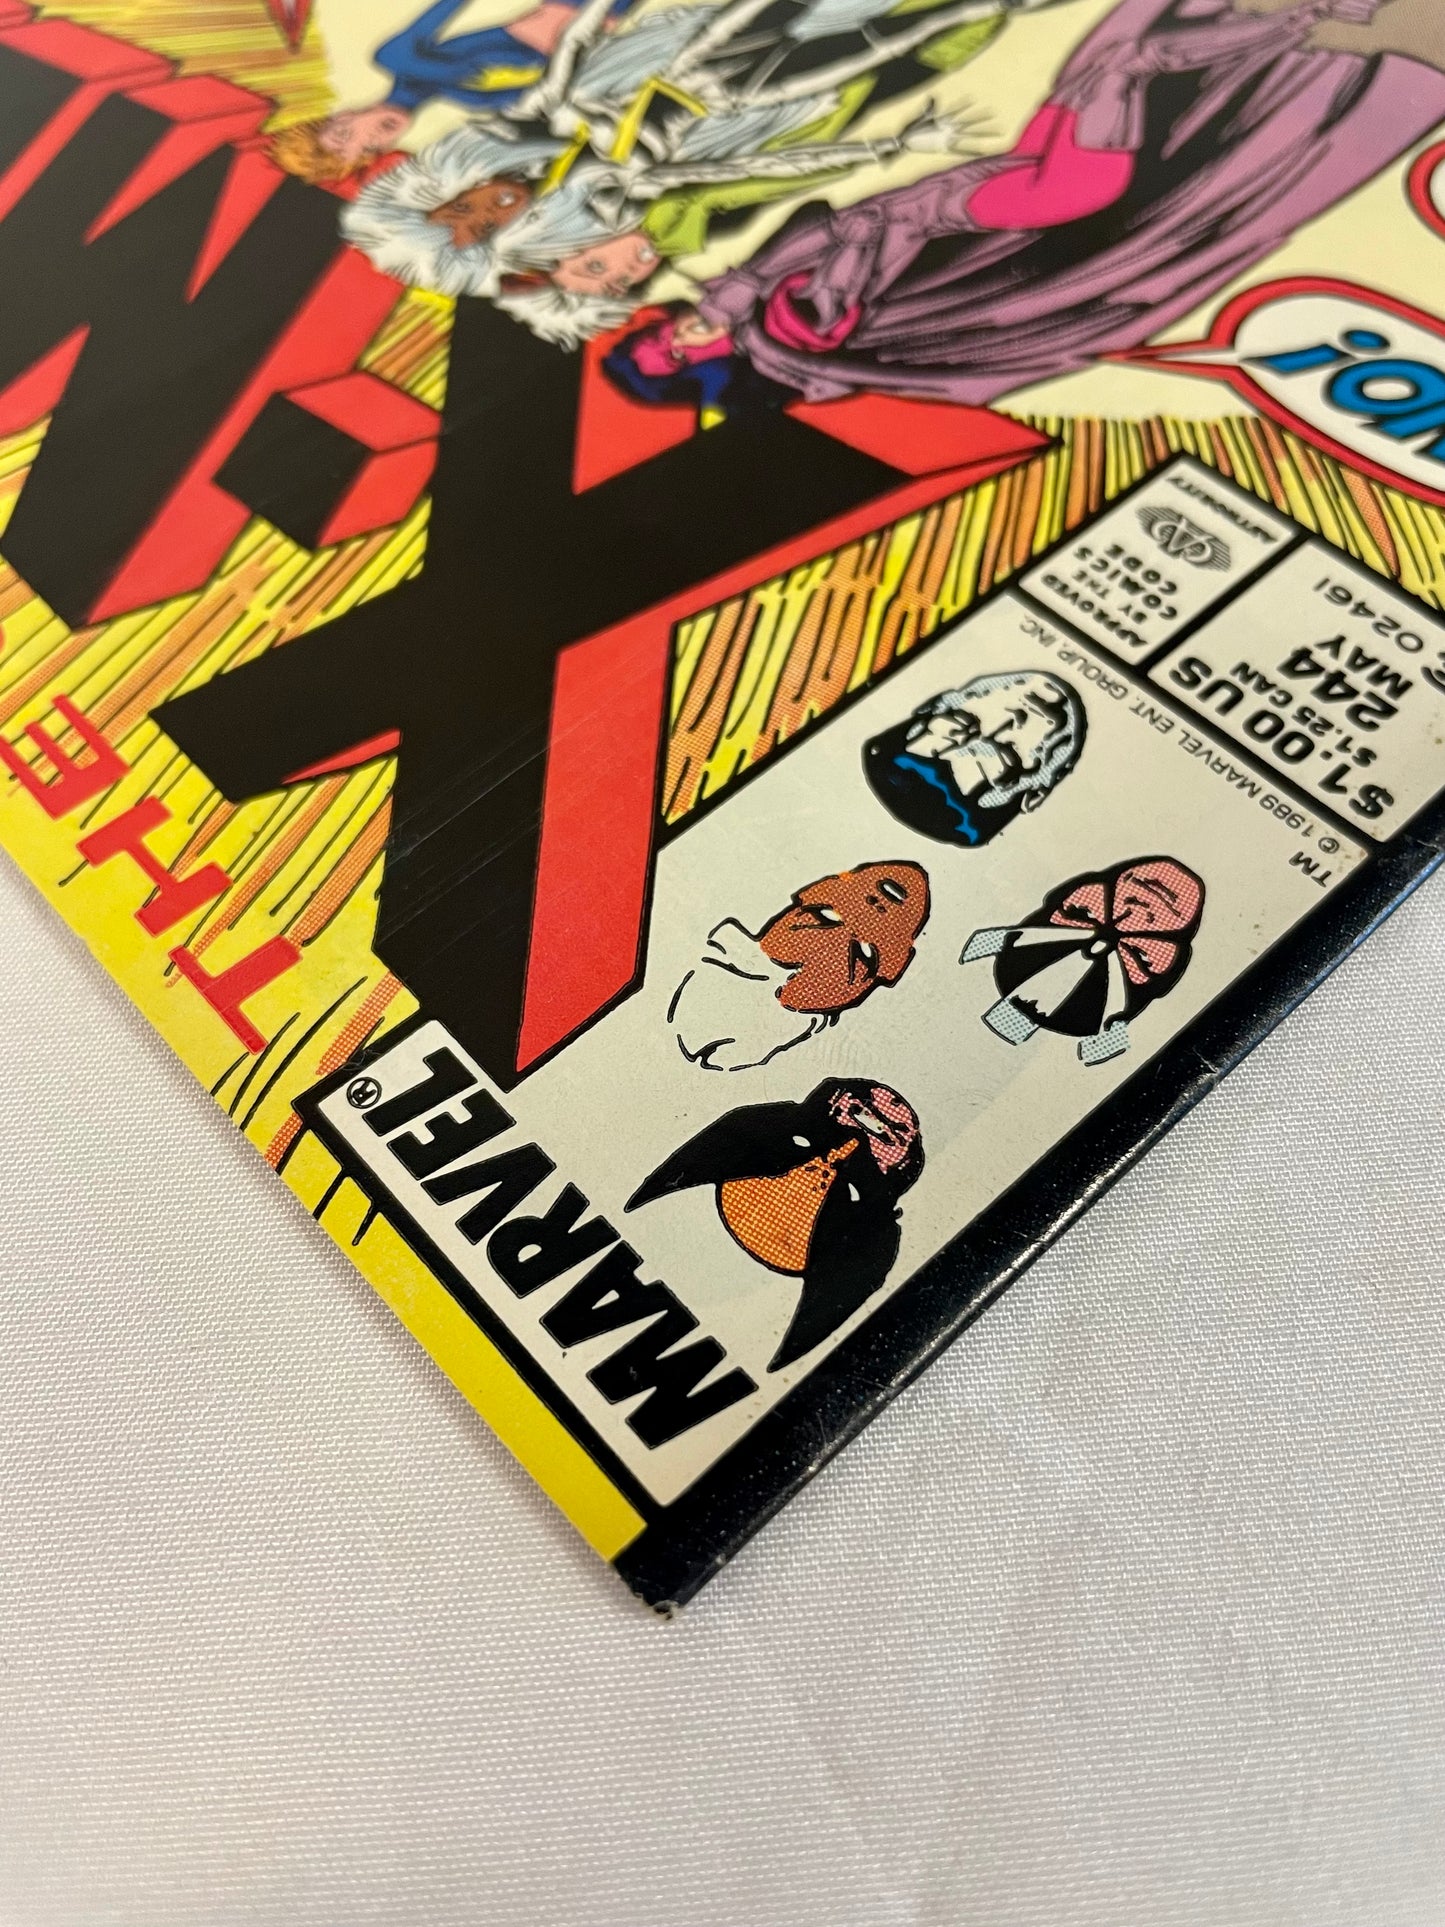 Marvel Comics The Uncanny X-MEN #244